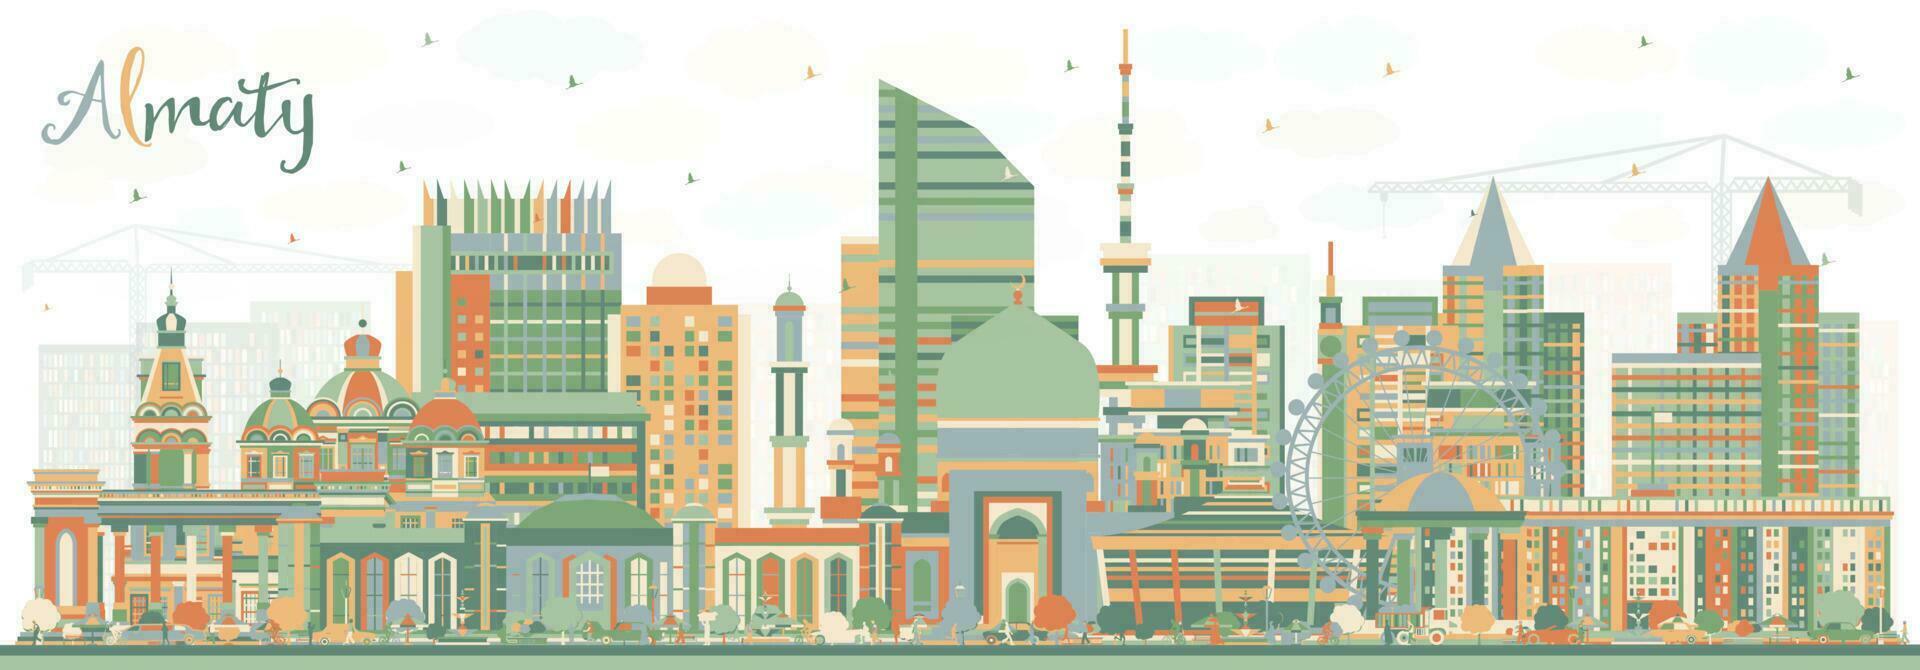 almaty kazakhstan stad horisont med Färg byggnader. vektor illustration. almaty stadsbild med landmärken.